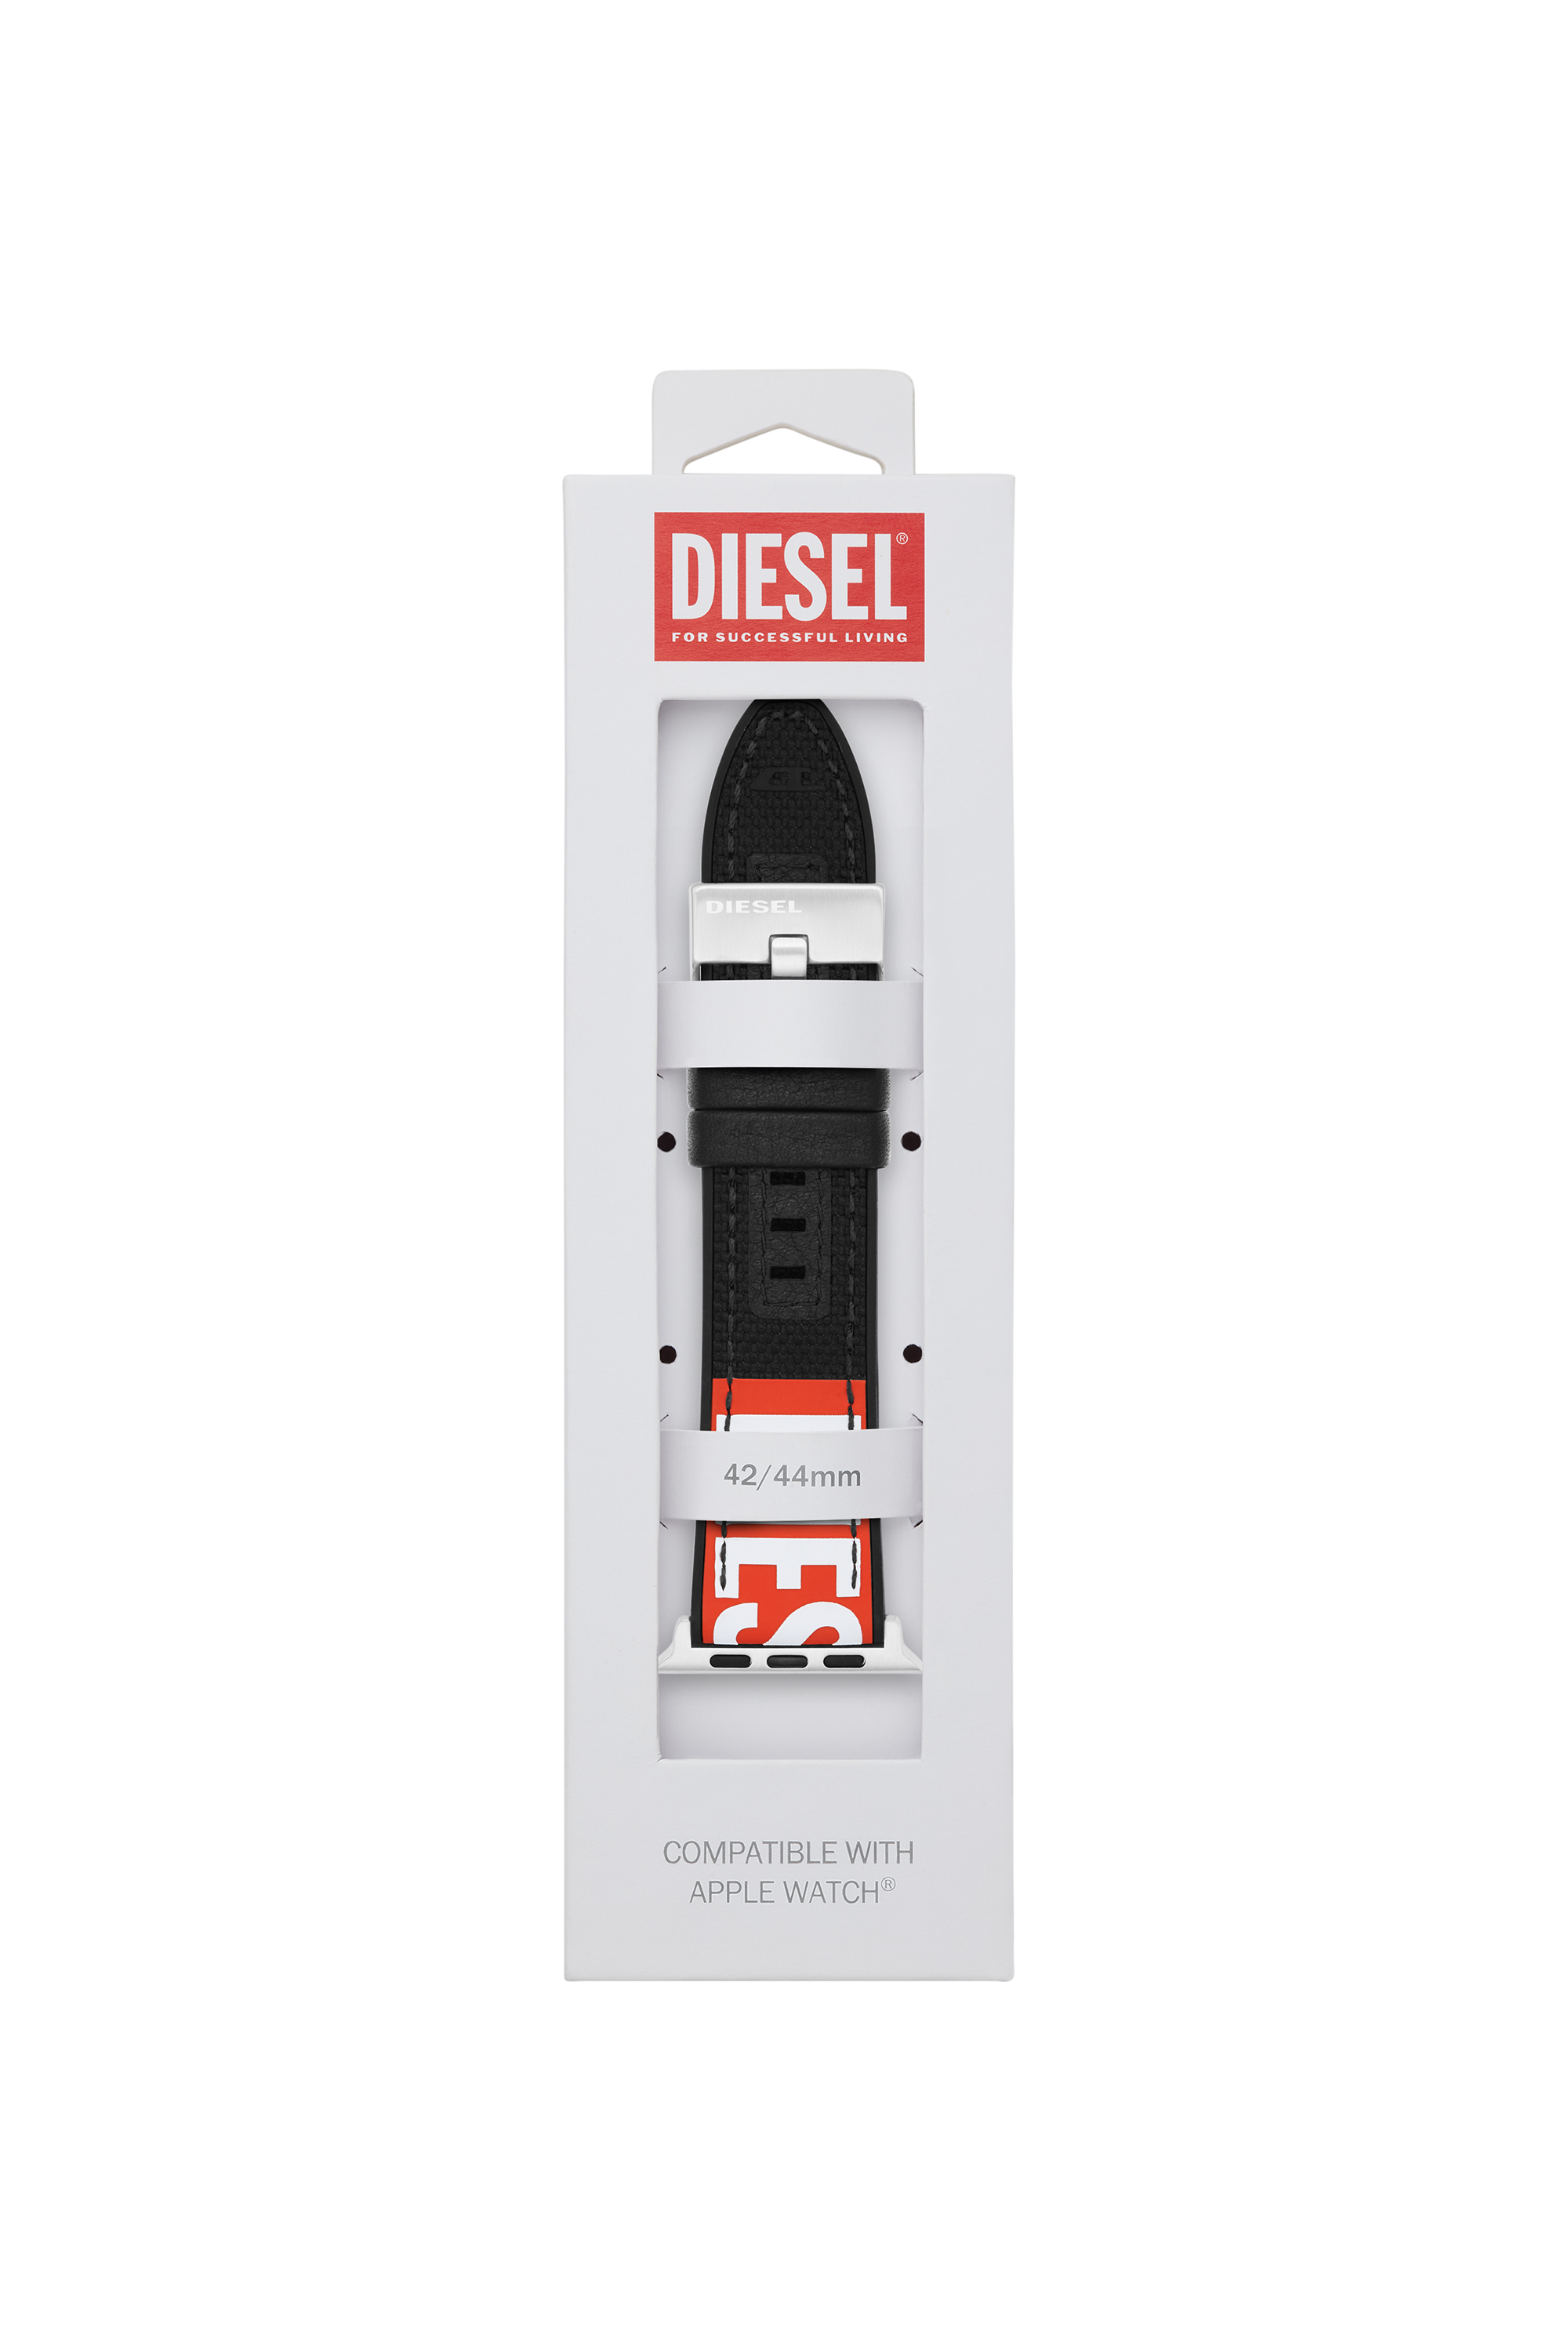 Diesel - DSS005, Black - Image 2